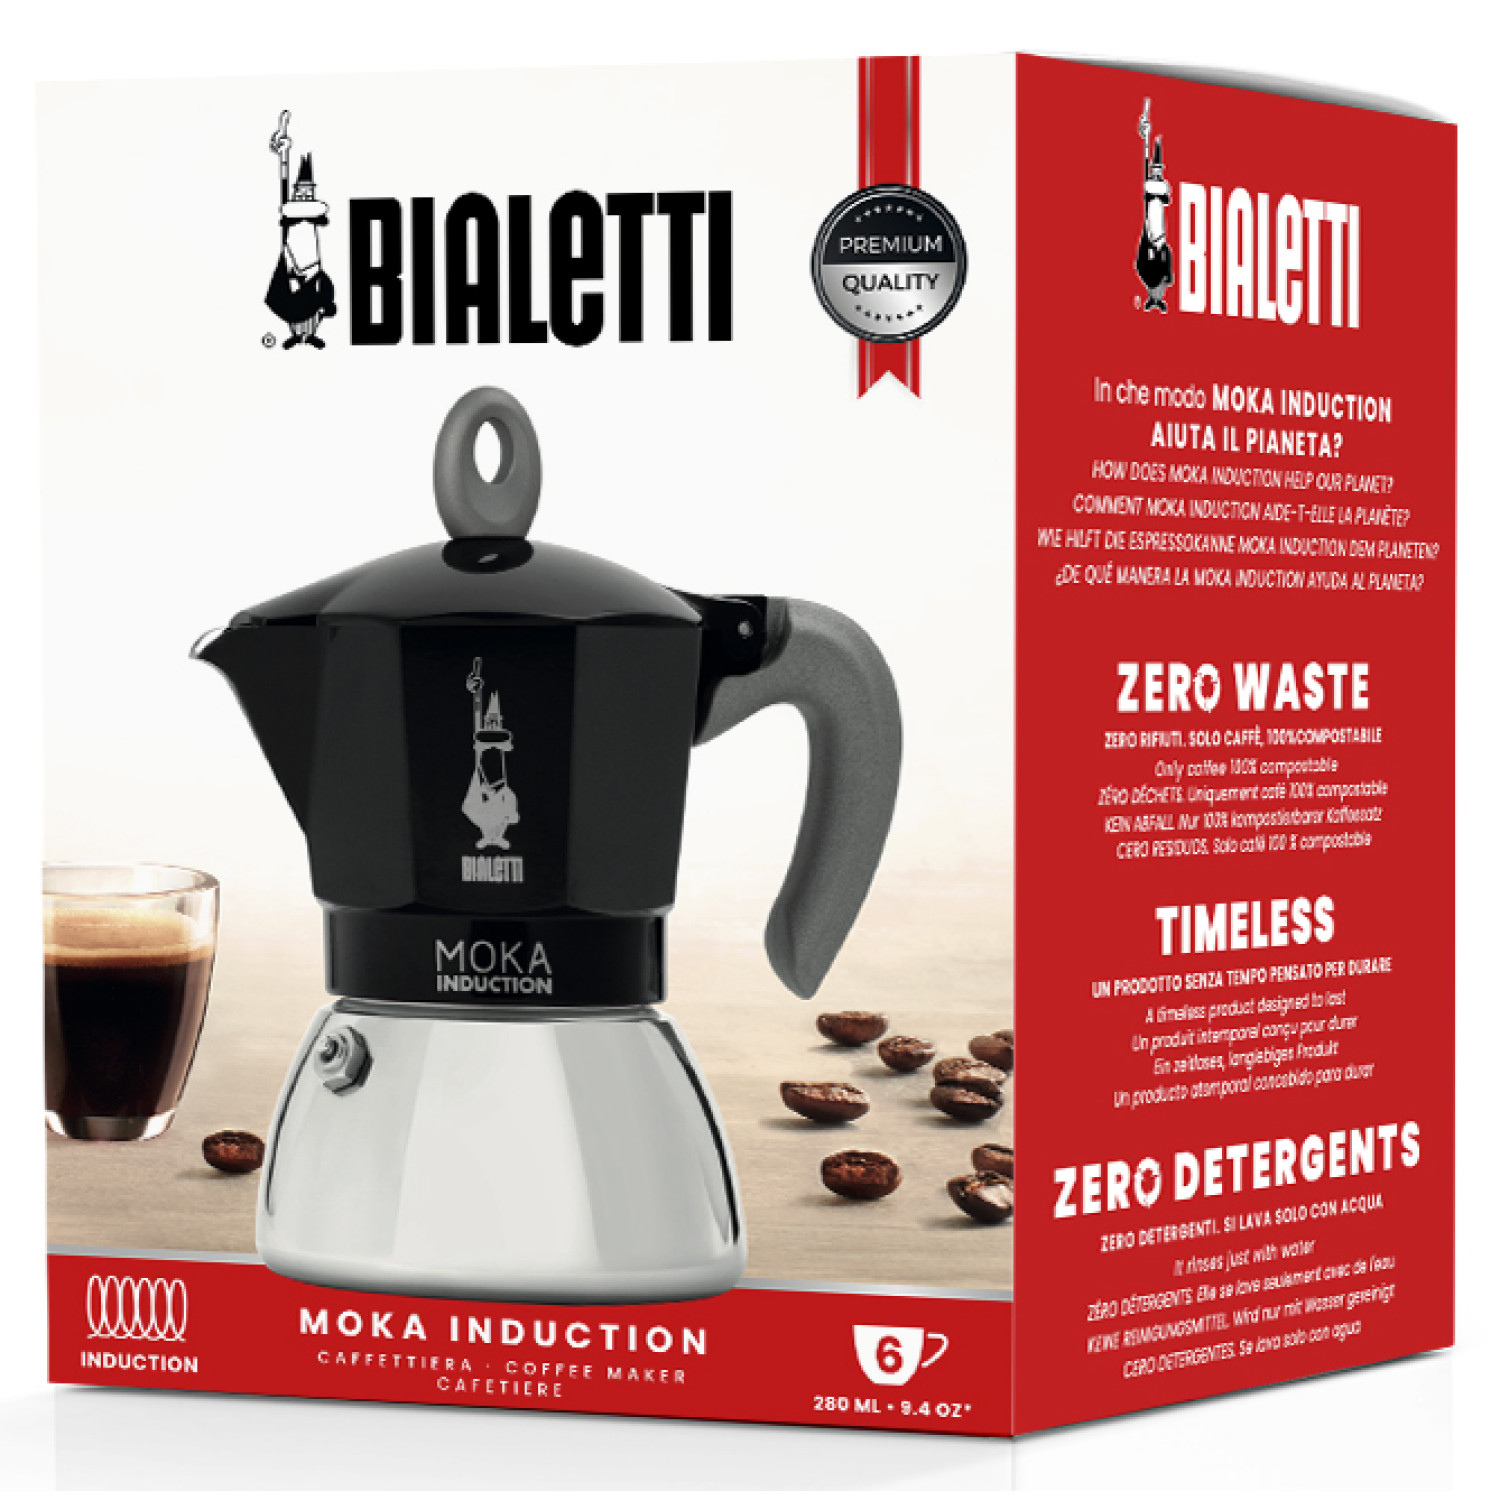 BIALETTI 6 Tassen für New Schwarz/Silber BLACK Induction Espressokocher Moka